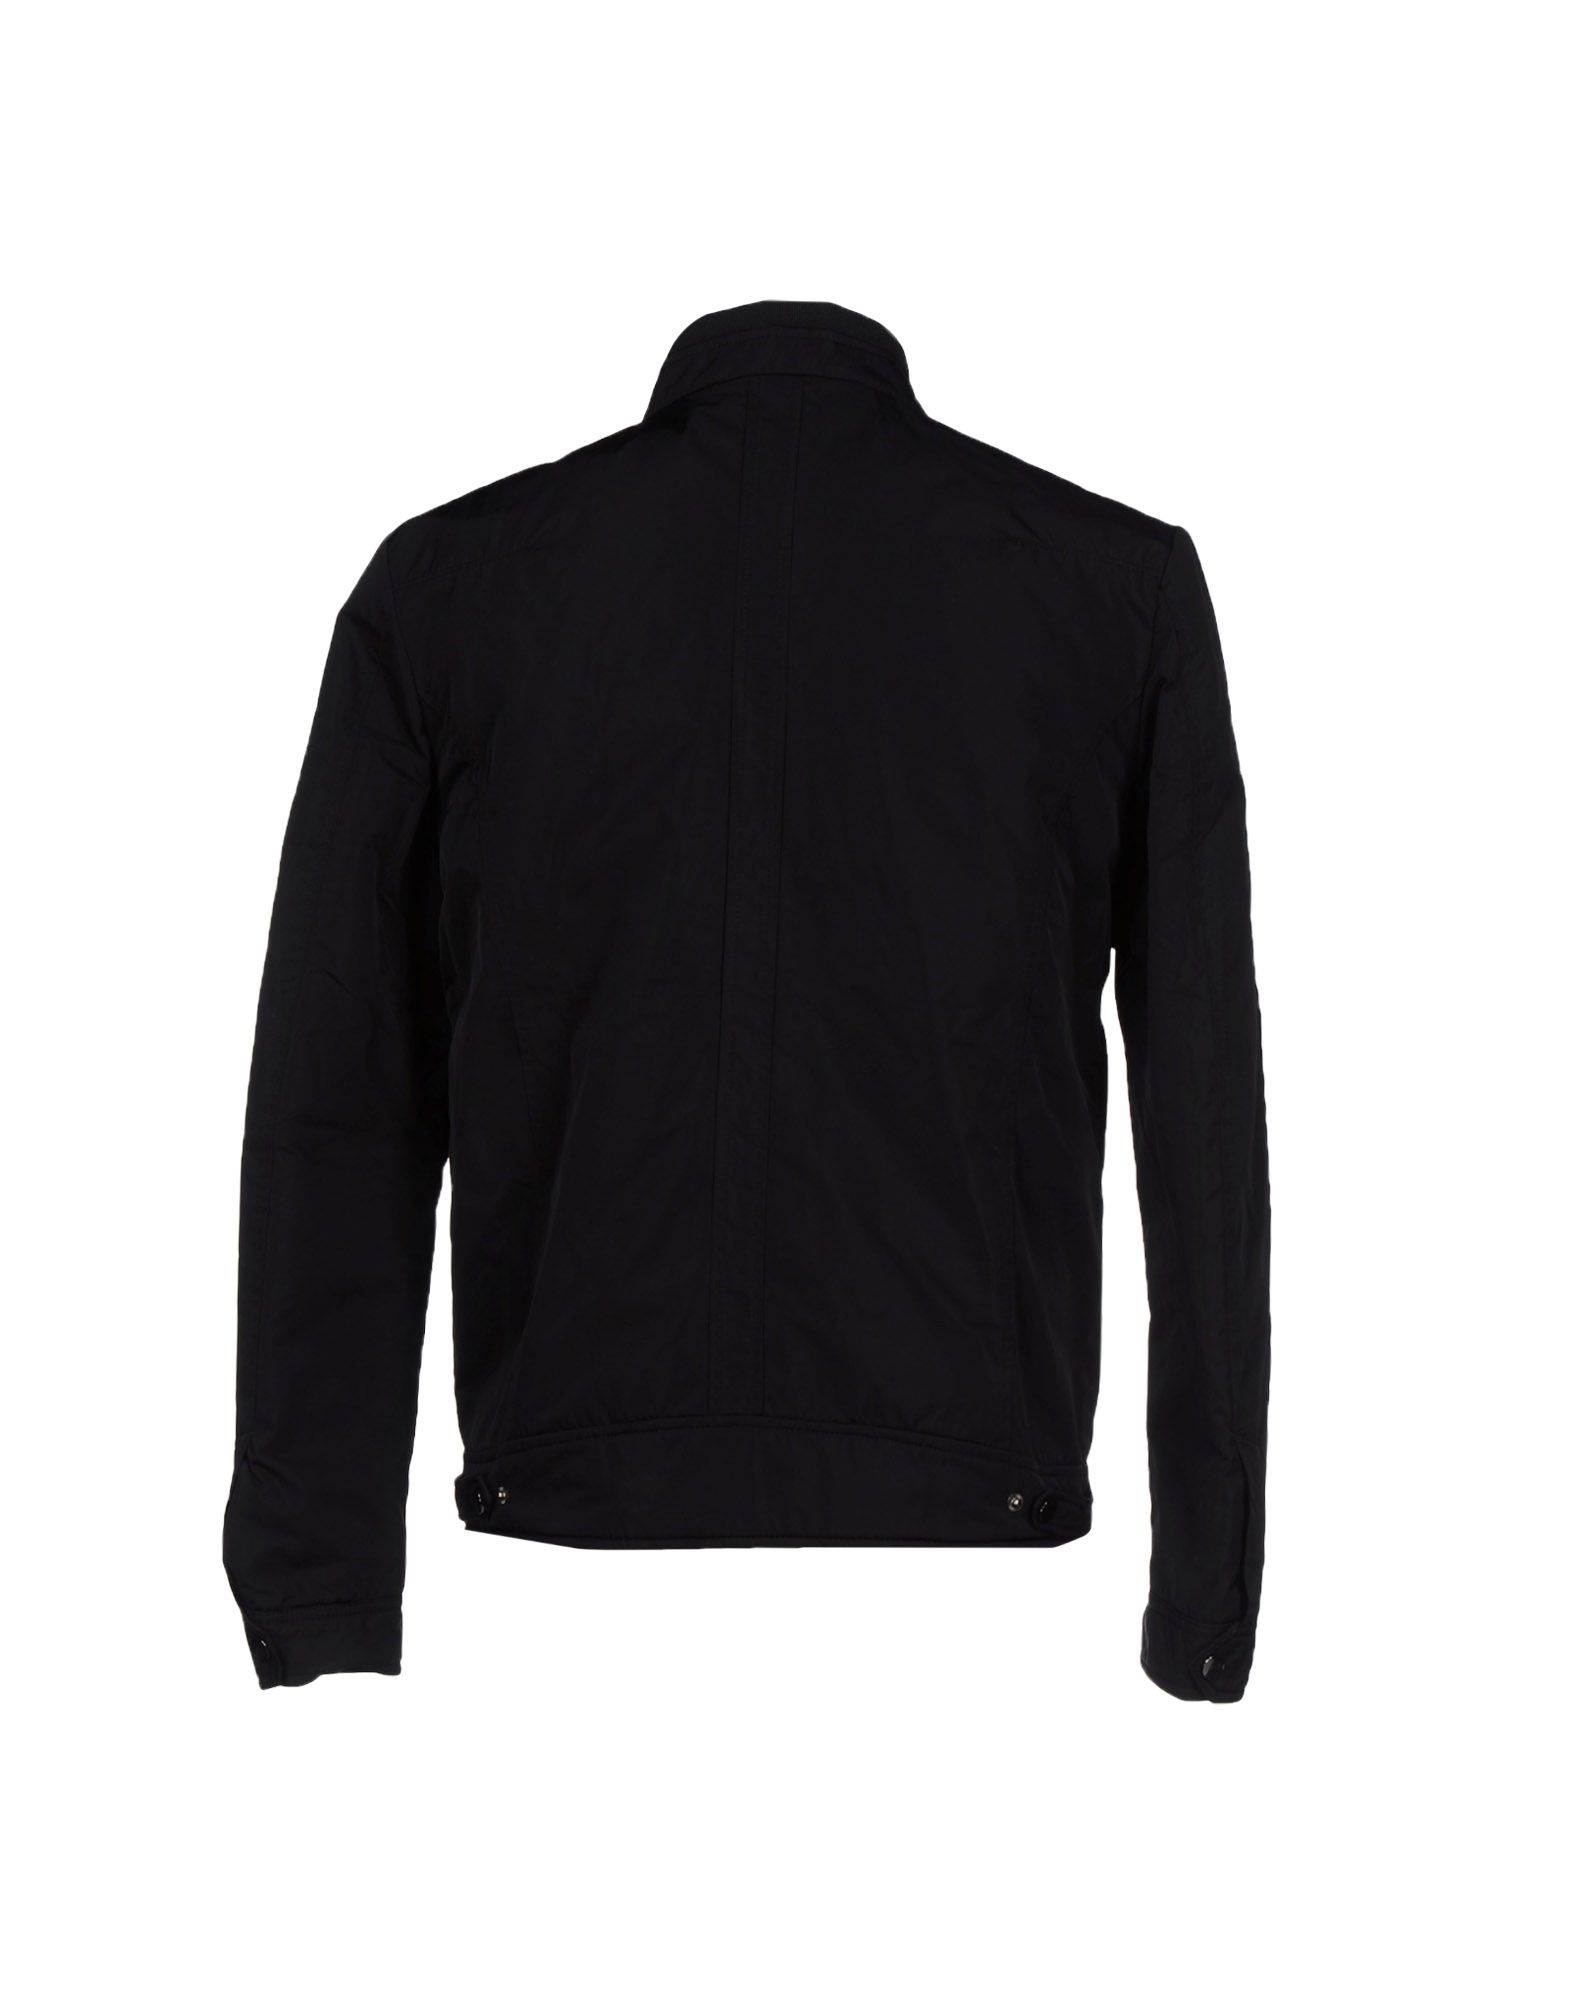 Antony Morato Jacket in Black for Men - Lyst